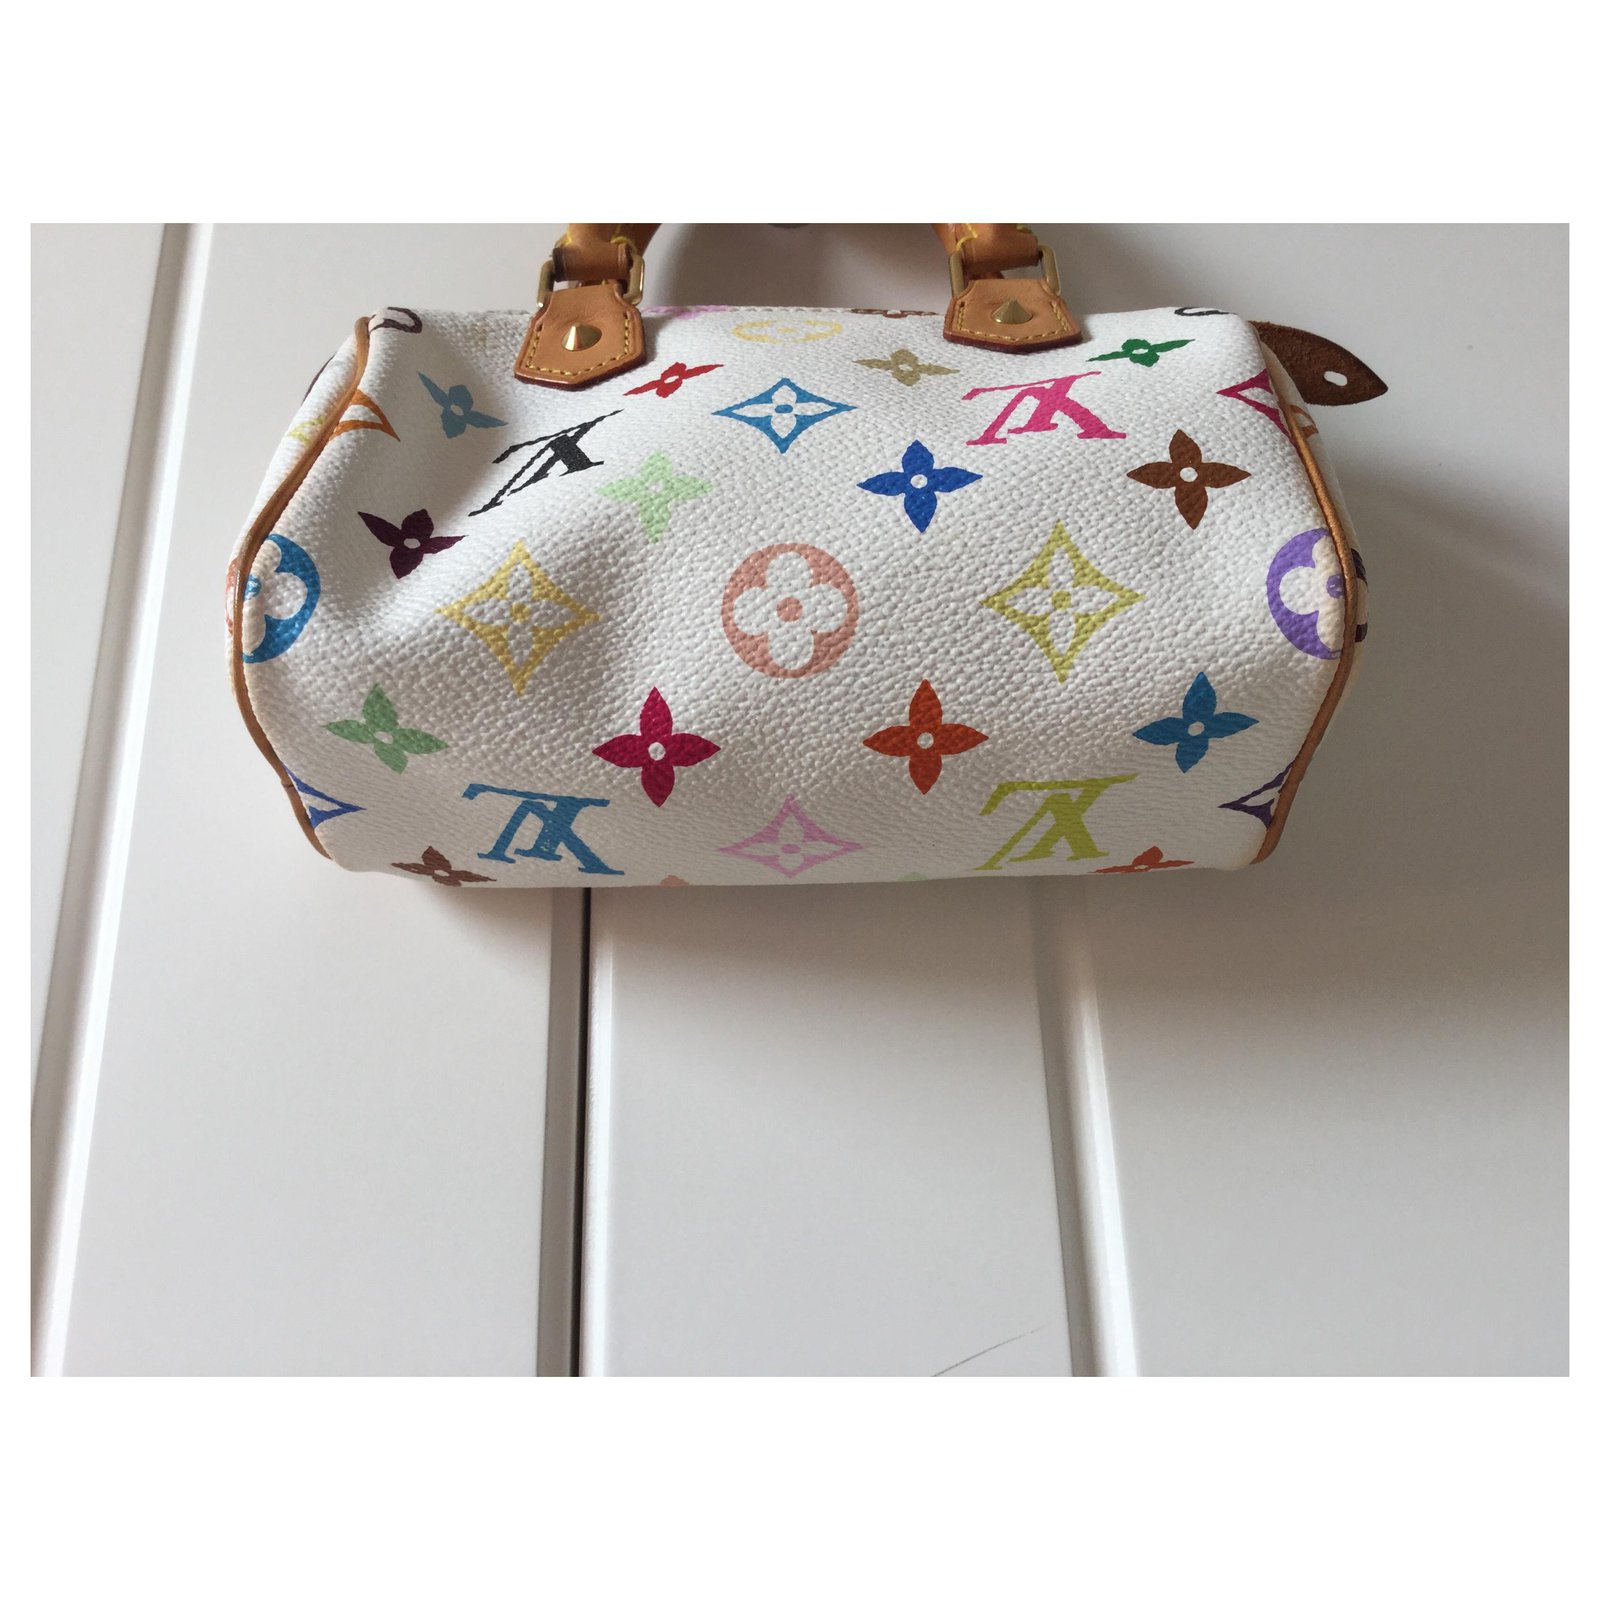 Nano speedy / mini hl cloth mini bag Louis Vuitton Multicolour in Cloth -  16879059